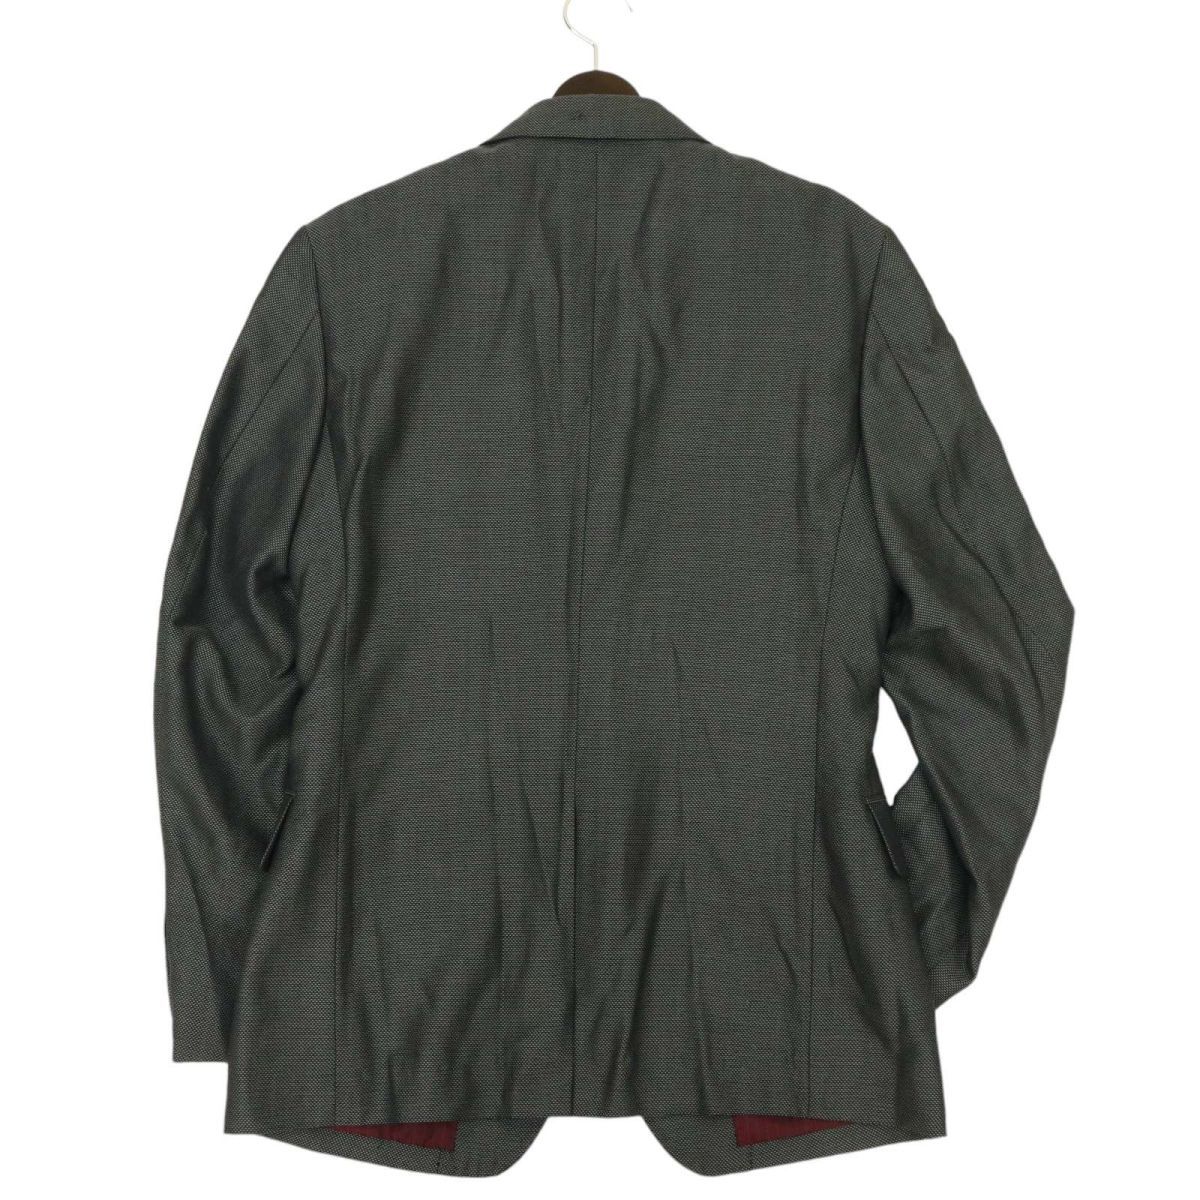 MEN\'S BIGI мужской Bigi через год необшитый на спине тонкий [ шелк .* шерсть ] 2B tailored jacket Sz.2 мужской серый сделано в Японии C4T00853_1#O